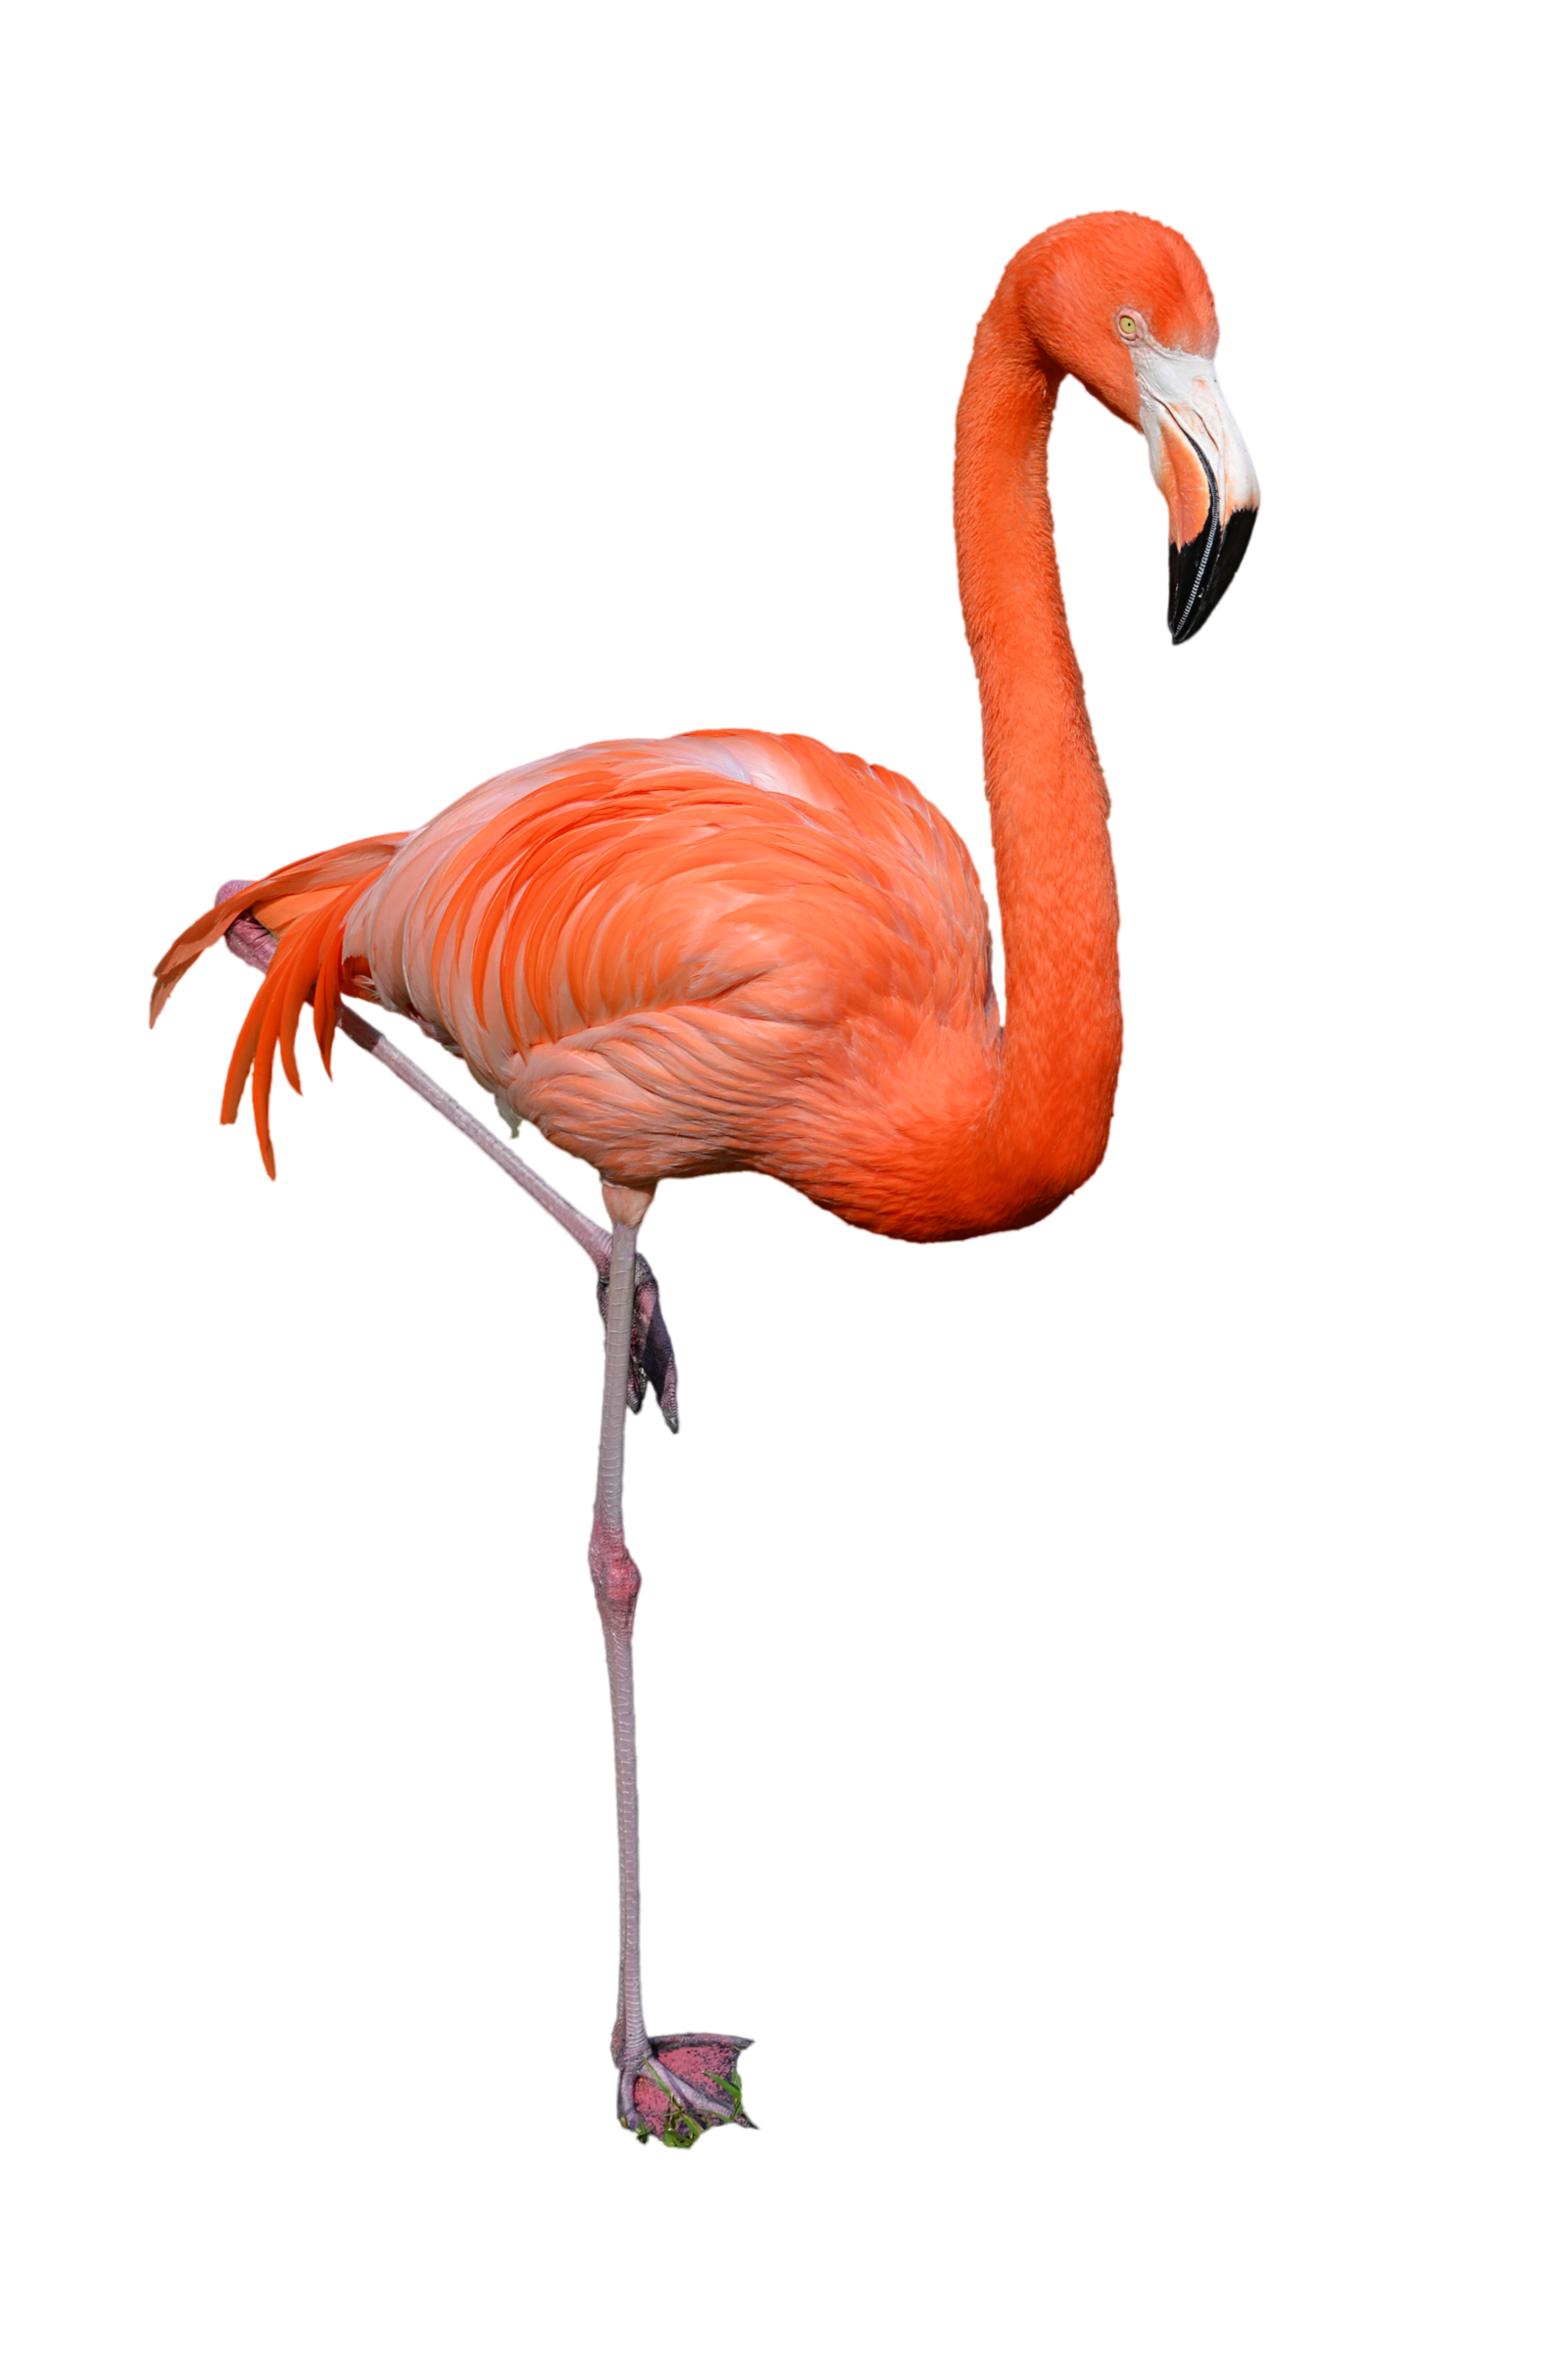 Flamingo PNG Image - PurePNG | Free transparent CC0 PNG ...